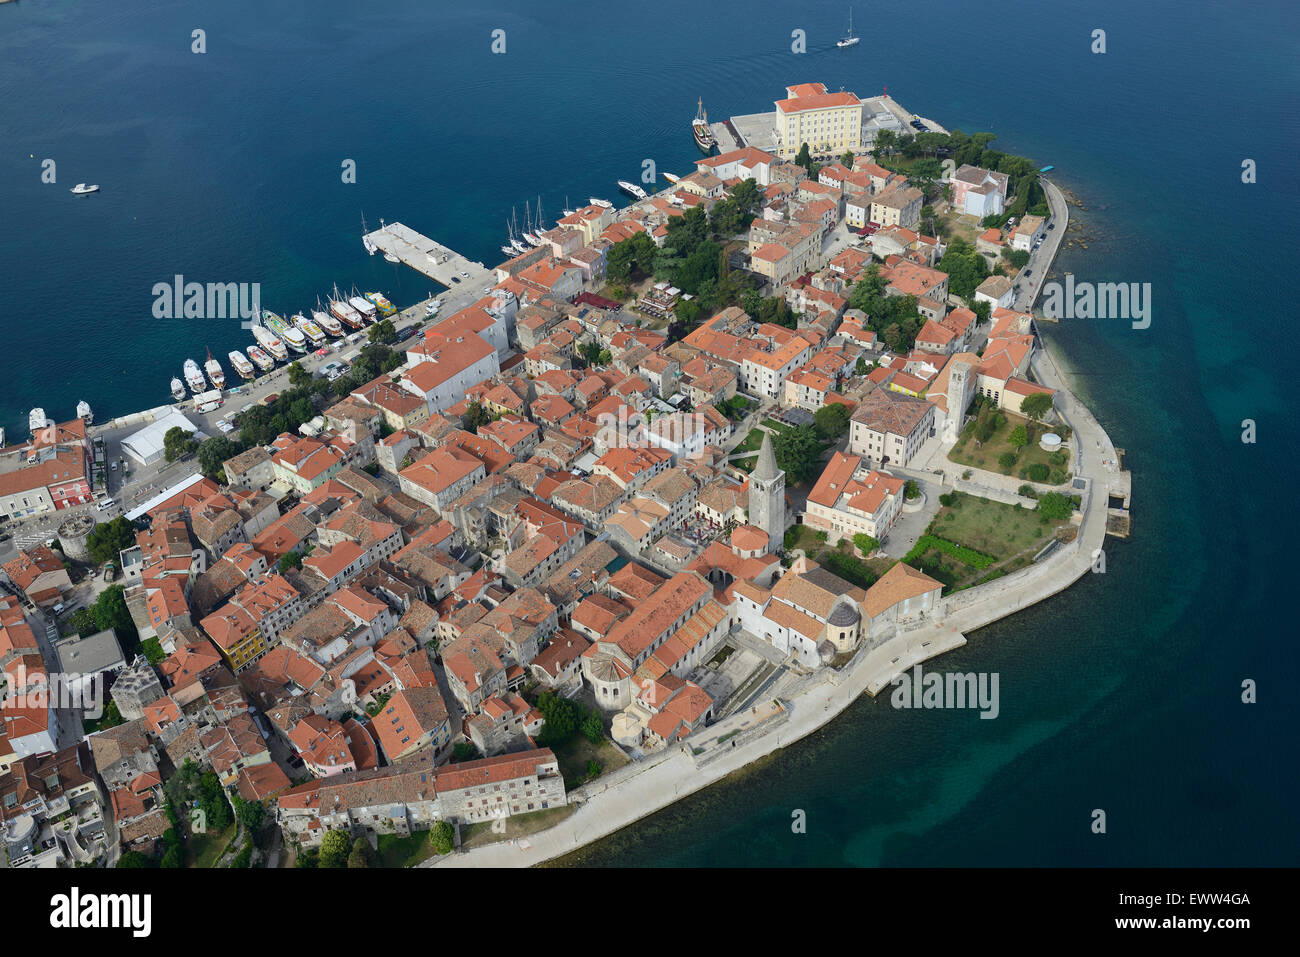 Alte Stadt On A Halbinsel Luftbild Stadt Porec Auch Parenzo Seinen Italienischen Namen Istrien Kroatien Stockfotografie Alamy